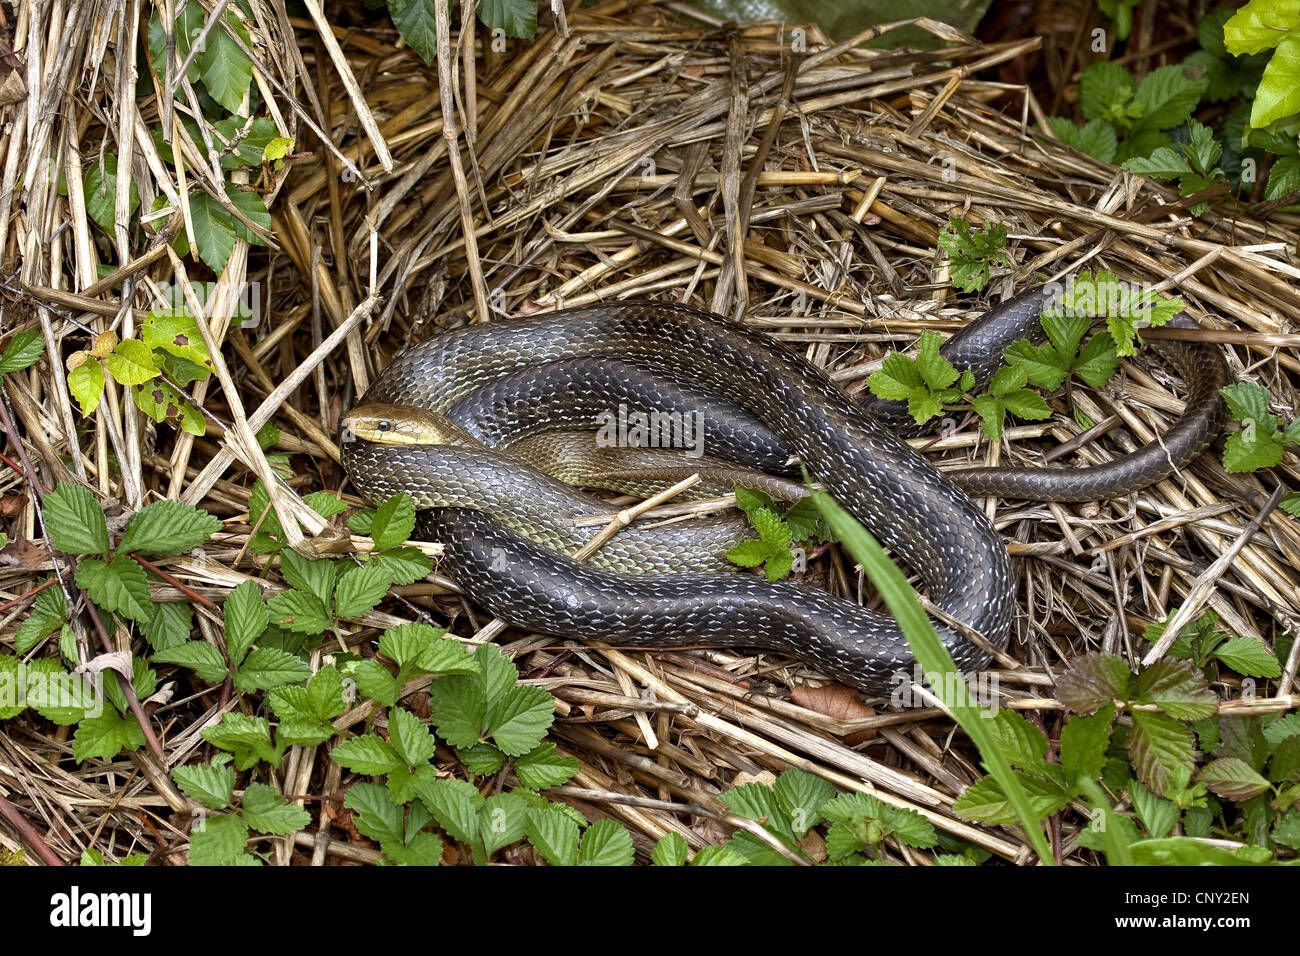 Aesculapian snake (Elaphe longissima, Zamenis longissimus), lying on the ground, Germany Stock Photo